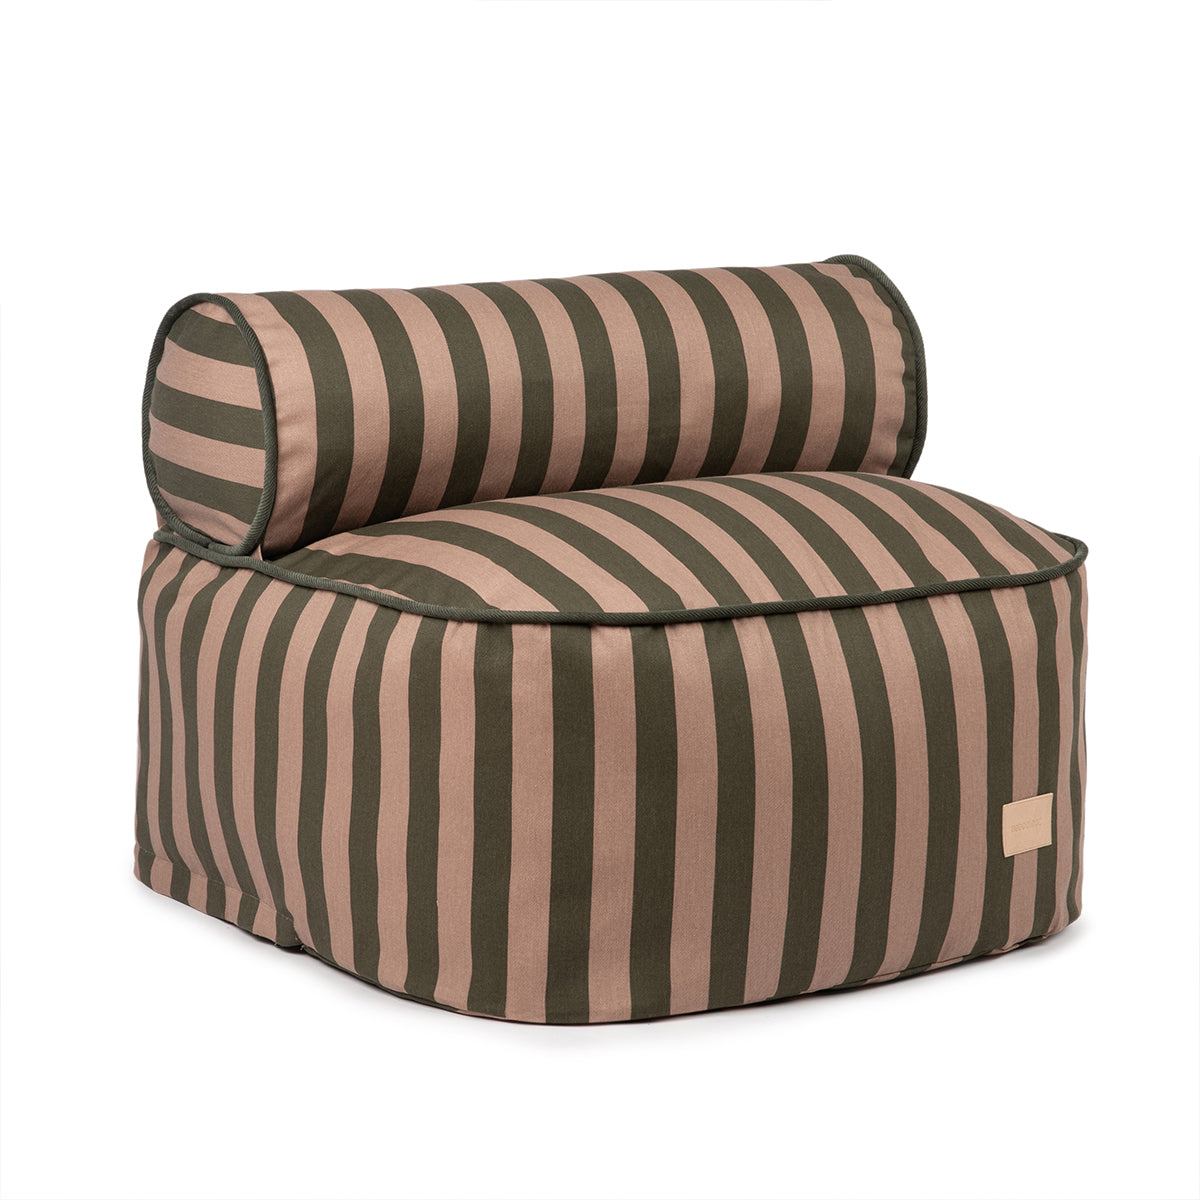 Deze Nobodinoz Majestic zitzak green taupe stripes is een zitzak-meets-fauteuil, speciaal gemaakt voor kinderen. Hij biedt niet alleen comfort, maar past met zijn gestreepte uiterlijk ook mooi bij elk interieur. VanZus